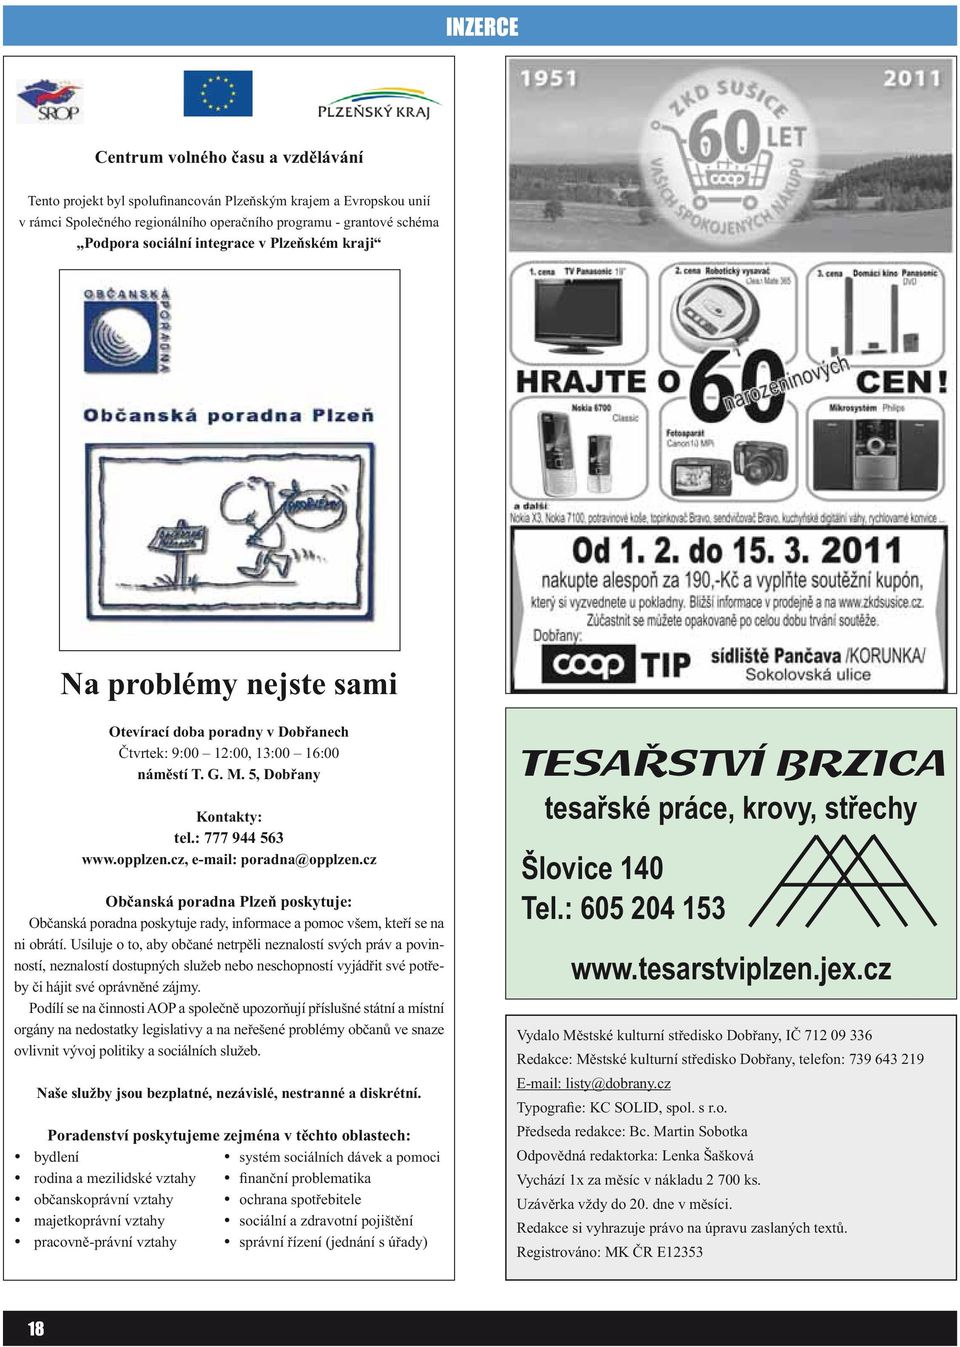 cz, e-mail: poradna@opplzen.cz Občanská poradna Plzeň poskytuje: Občanská poradna poskytuje rady, informace a pomoc všem, kteří se na ni obrátí.